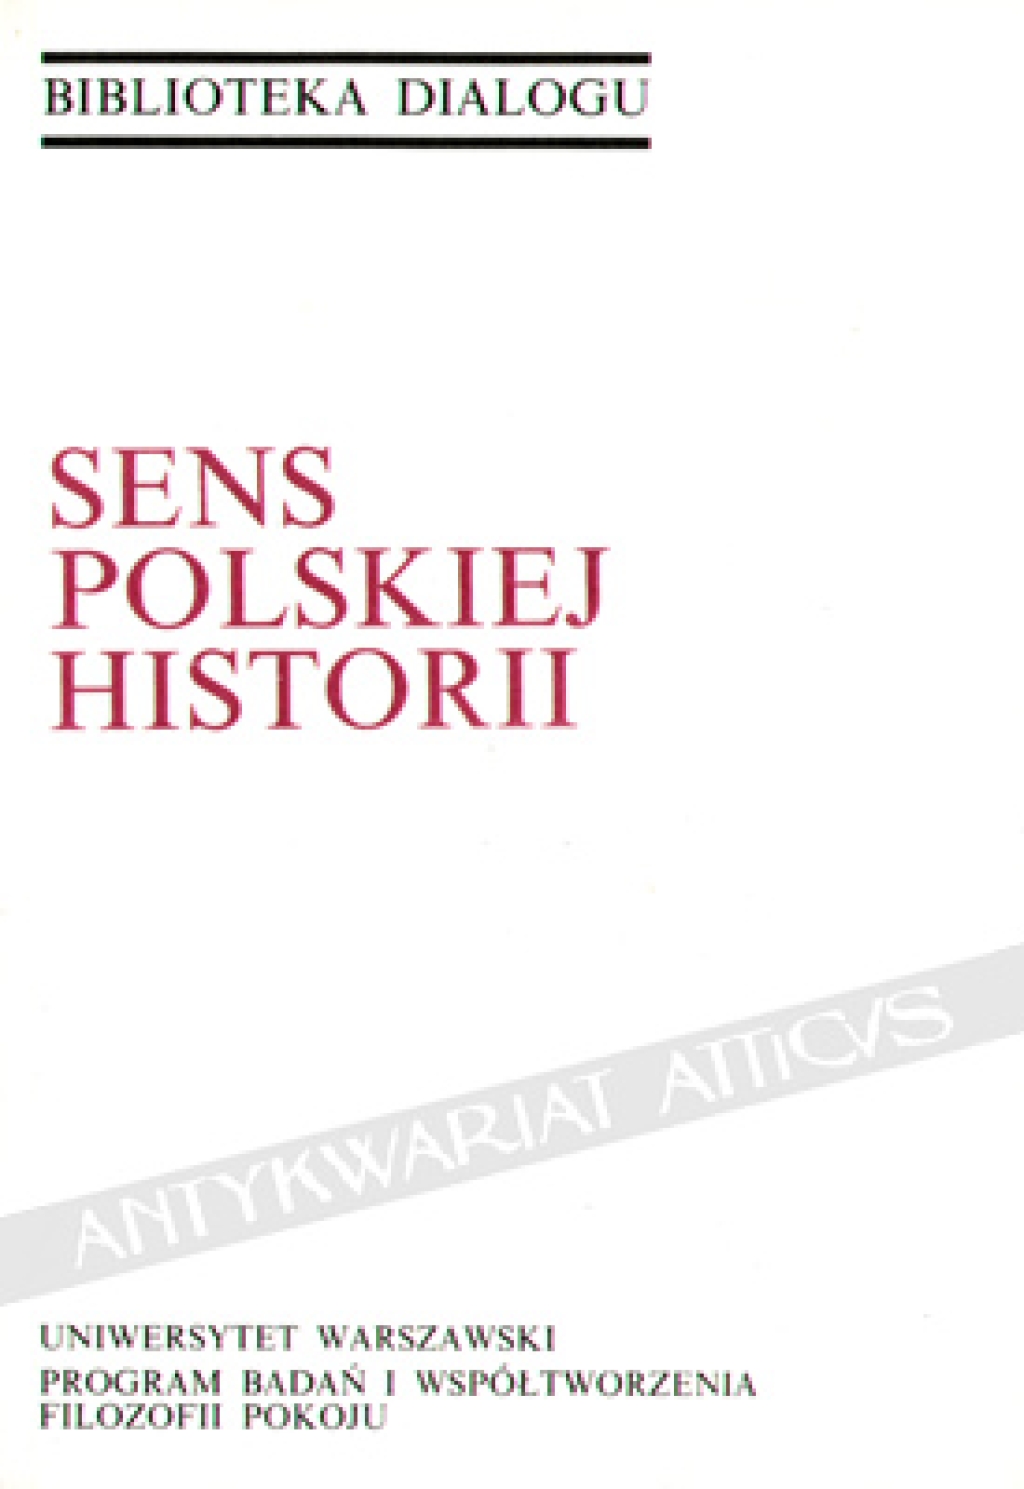 Sens polskiej historii [zbiór tekstów]